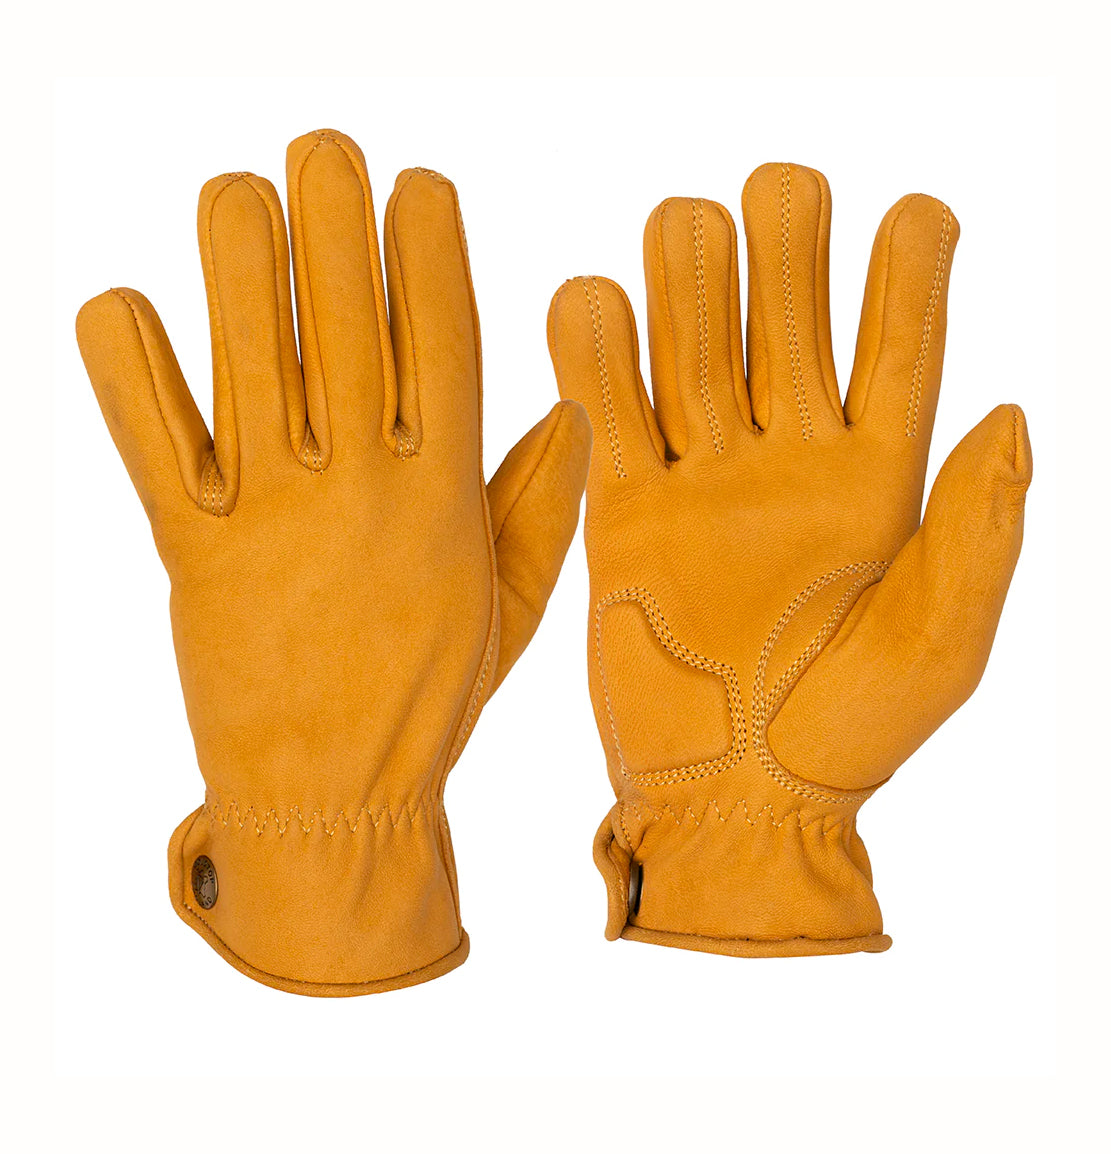 Goldtop deerskin roper gloves